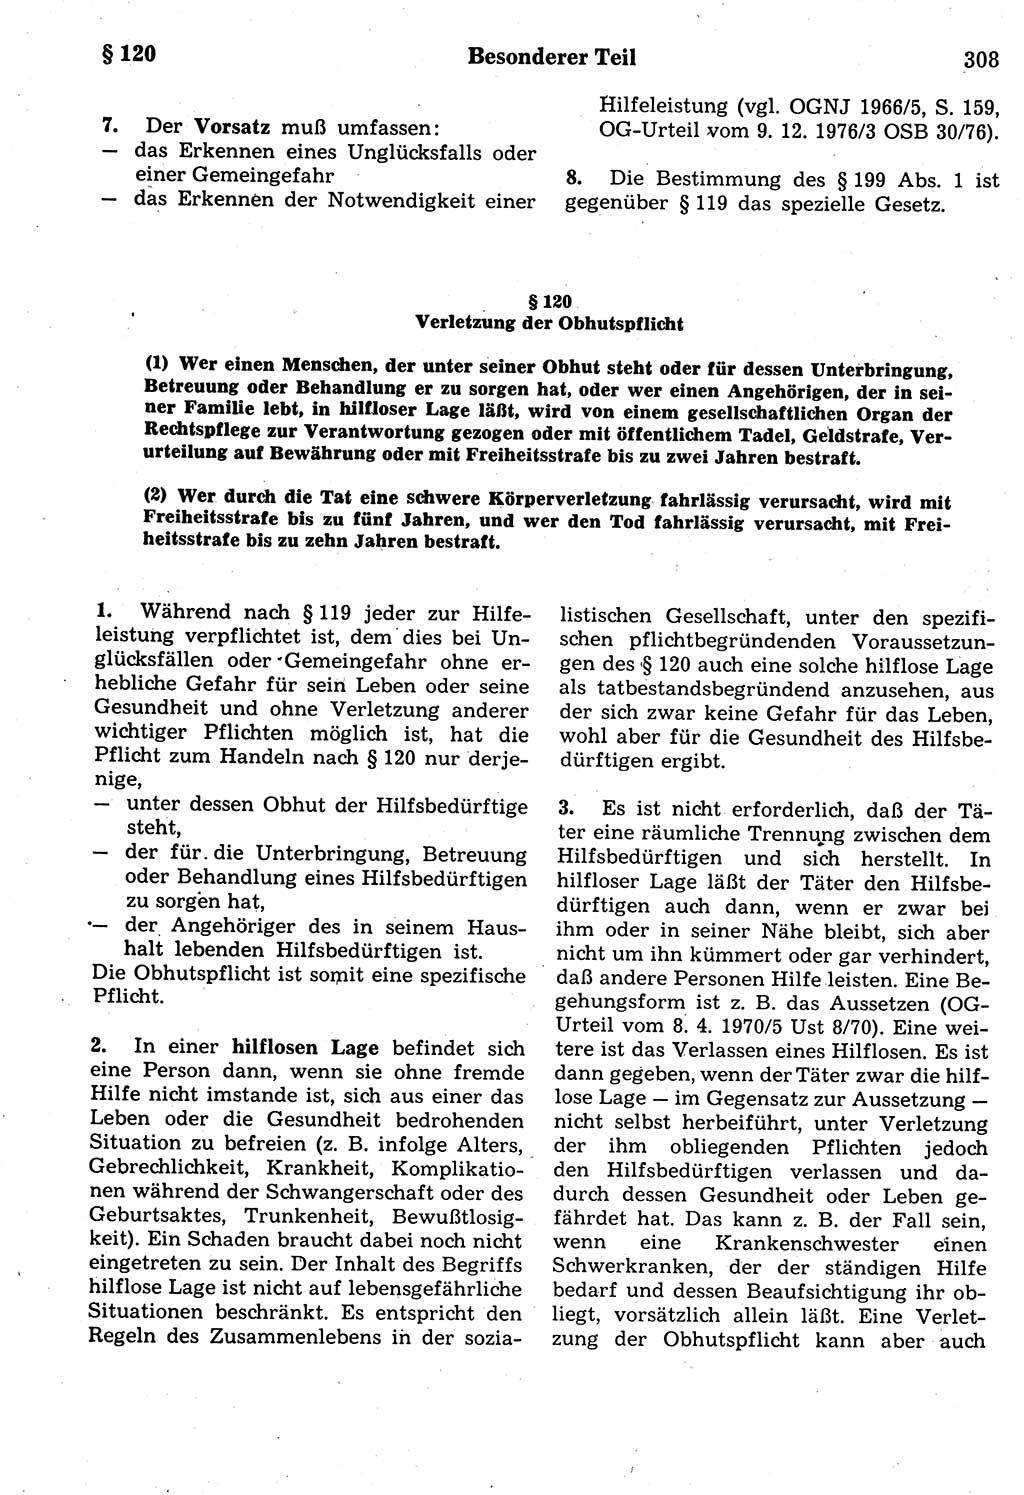 Strafrecht der Deutschen Demokratischen Republik (DDR), Kommentar zum Strafgesetzbuch (StGB) 1987, Seite 308 (Strafr. DDR Komm. StGB 1987, S. 308)